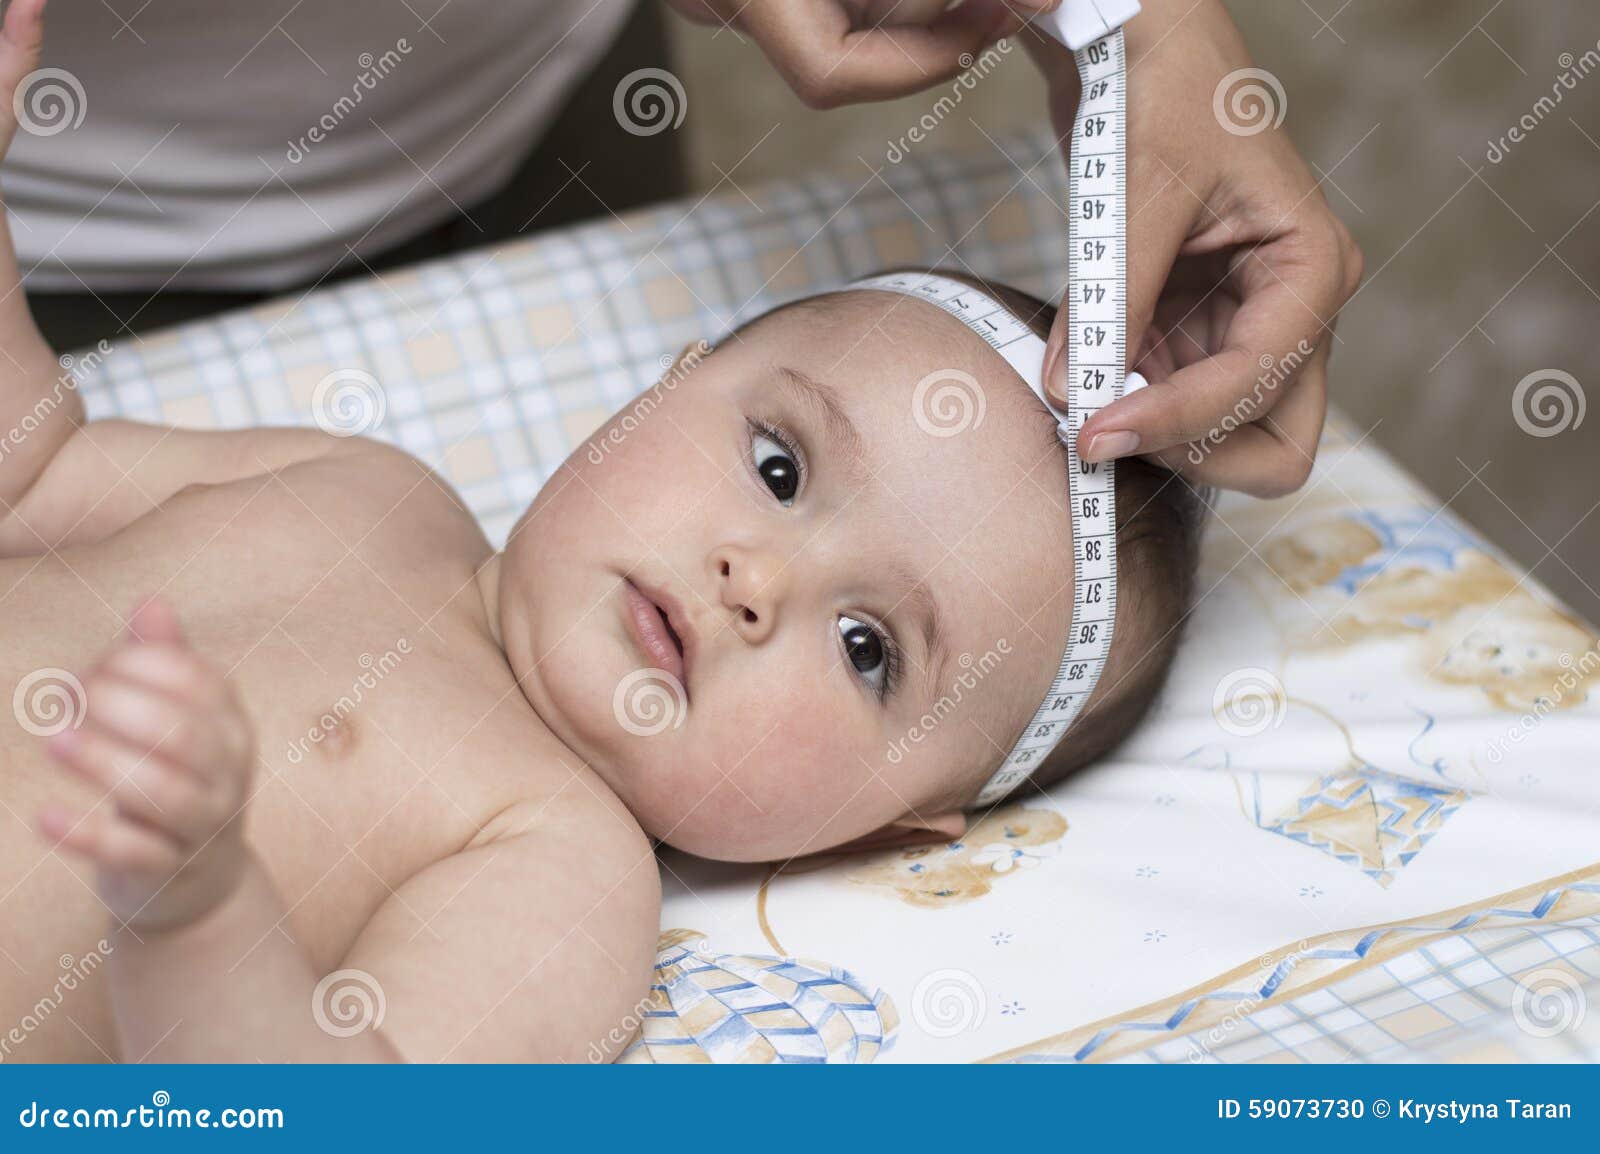 Измерение детей до года. Измерение головы новорожденного. Антропометрия новорожденного. Измерение окружности головы у новорожденных. Измерение окружности грудной клетки у детей.